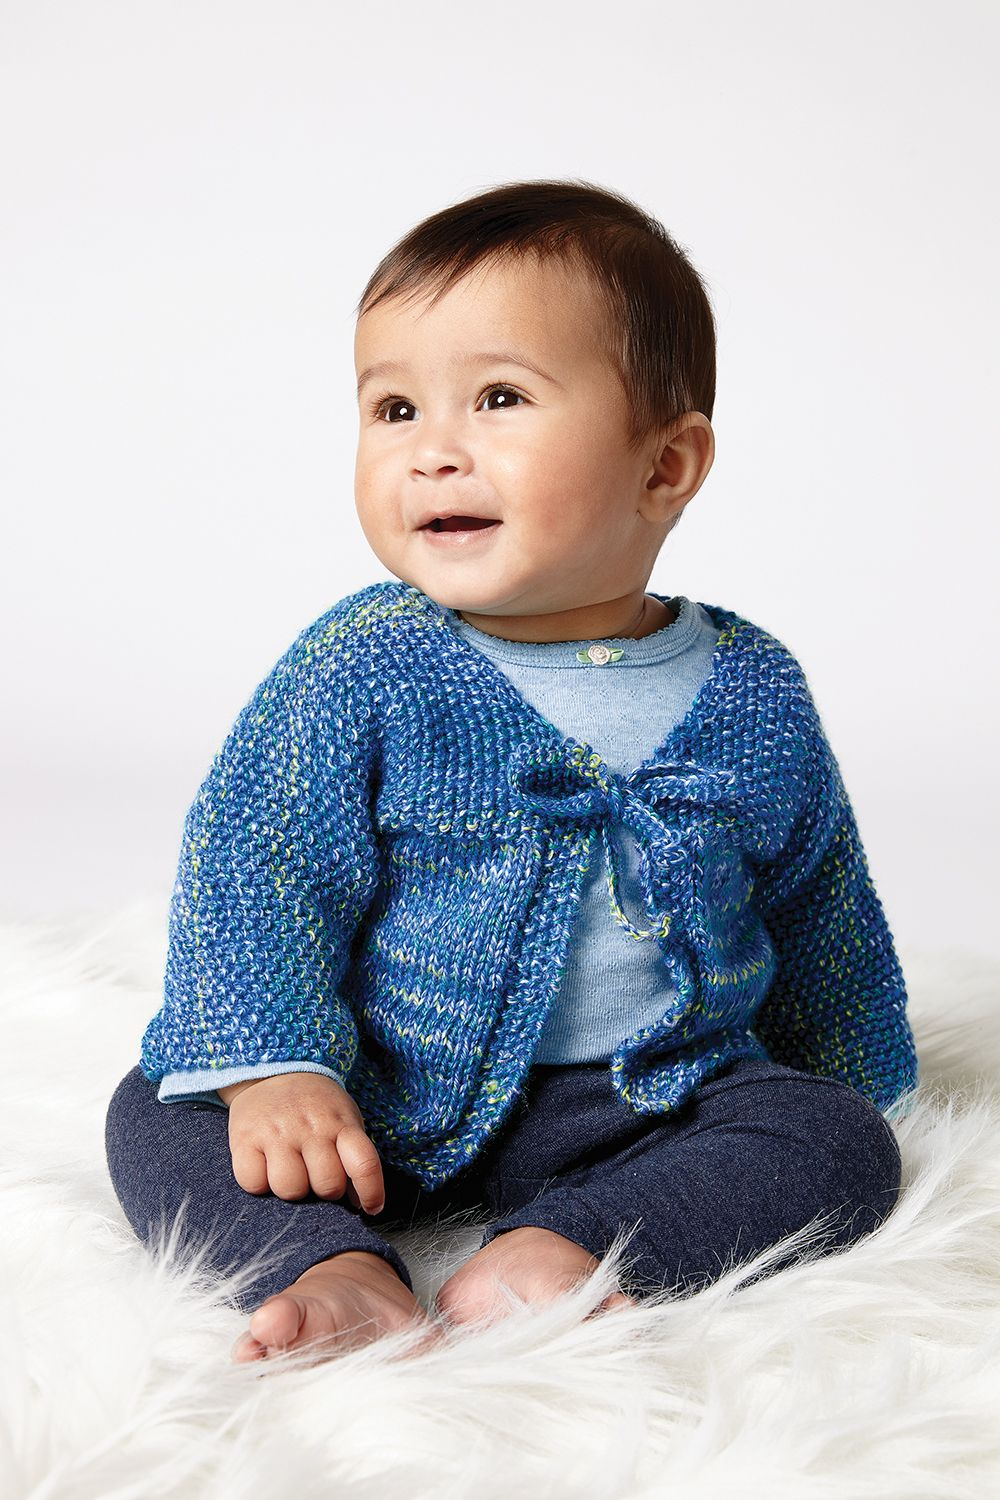 Baby Hoodie Knitting Pattern Free Free Quick Stitch Ba Cardigan Knit Pattern